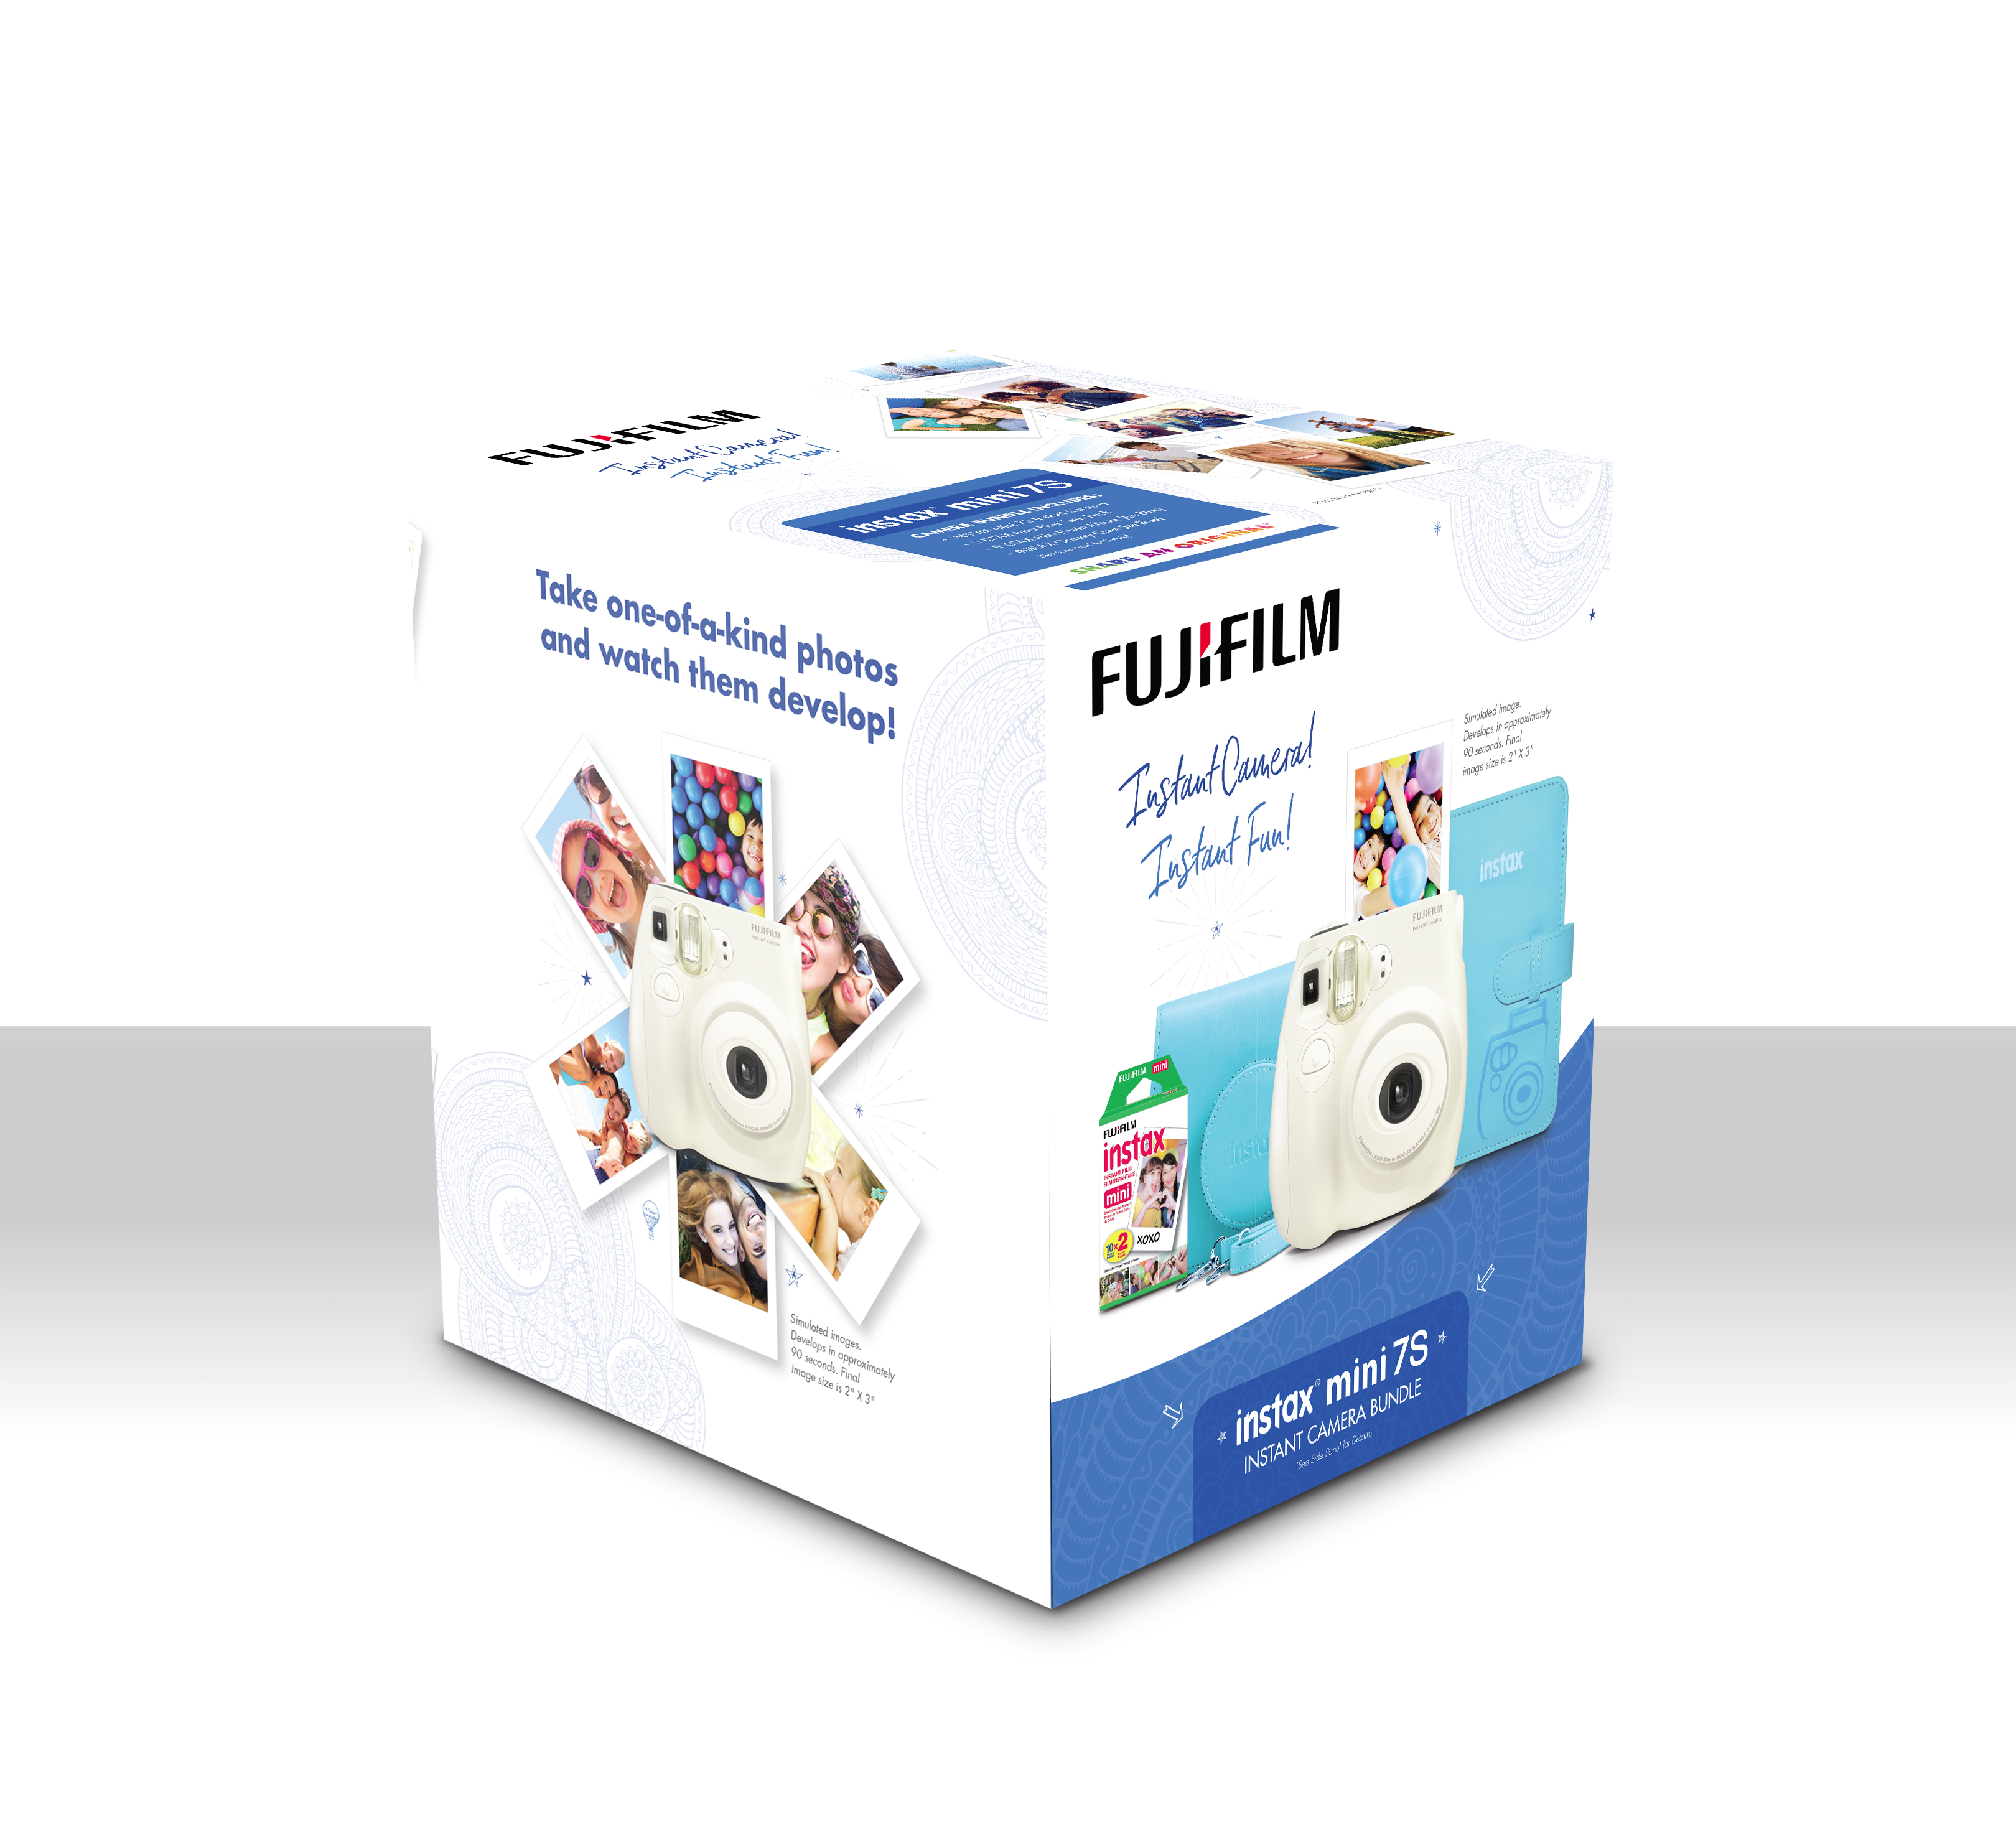 FujiFilm 600018767 Instax Mini 7S Instant Camera Bundle W/ Film Photo Album & Case - image 3 of 4